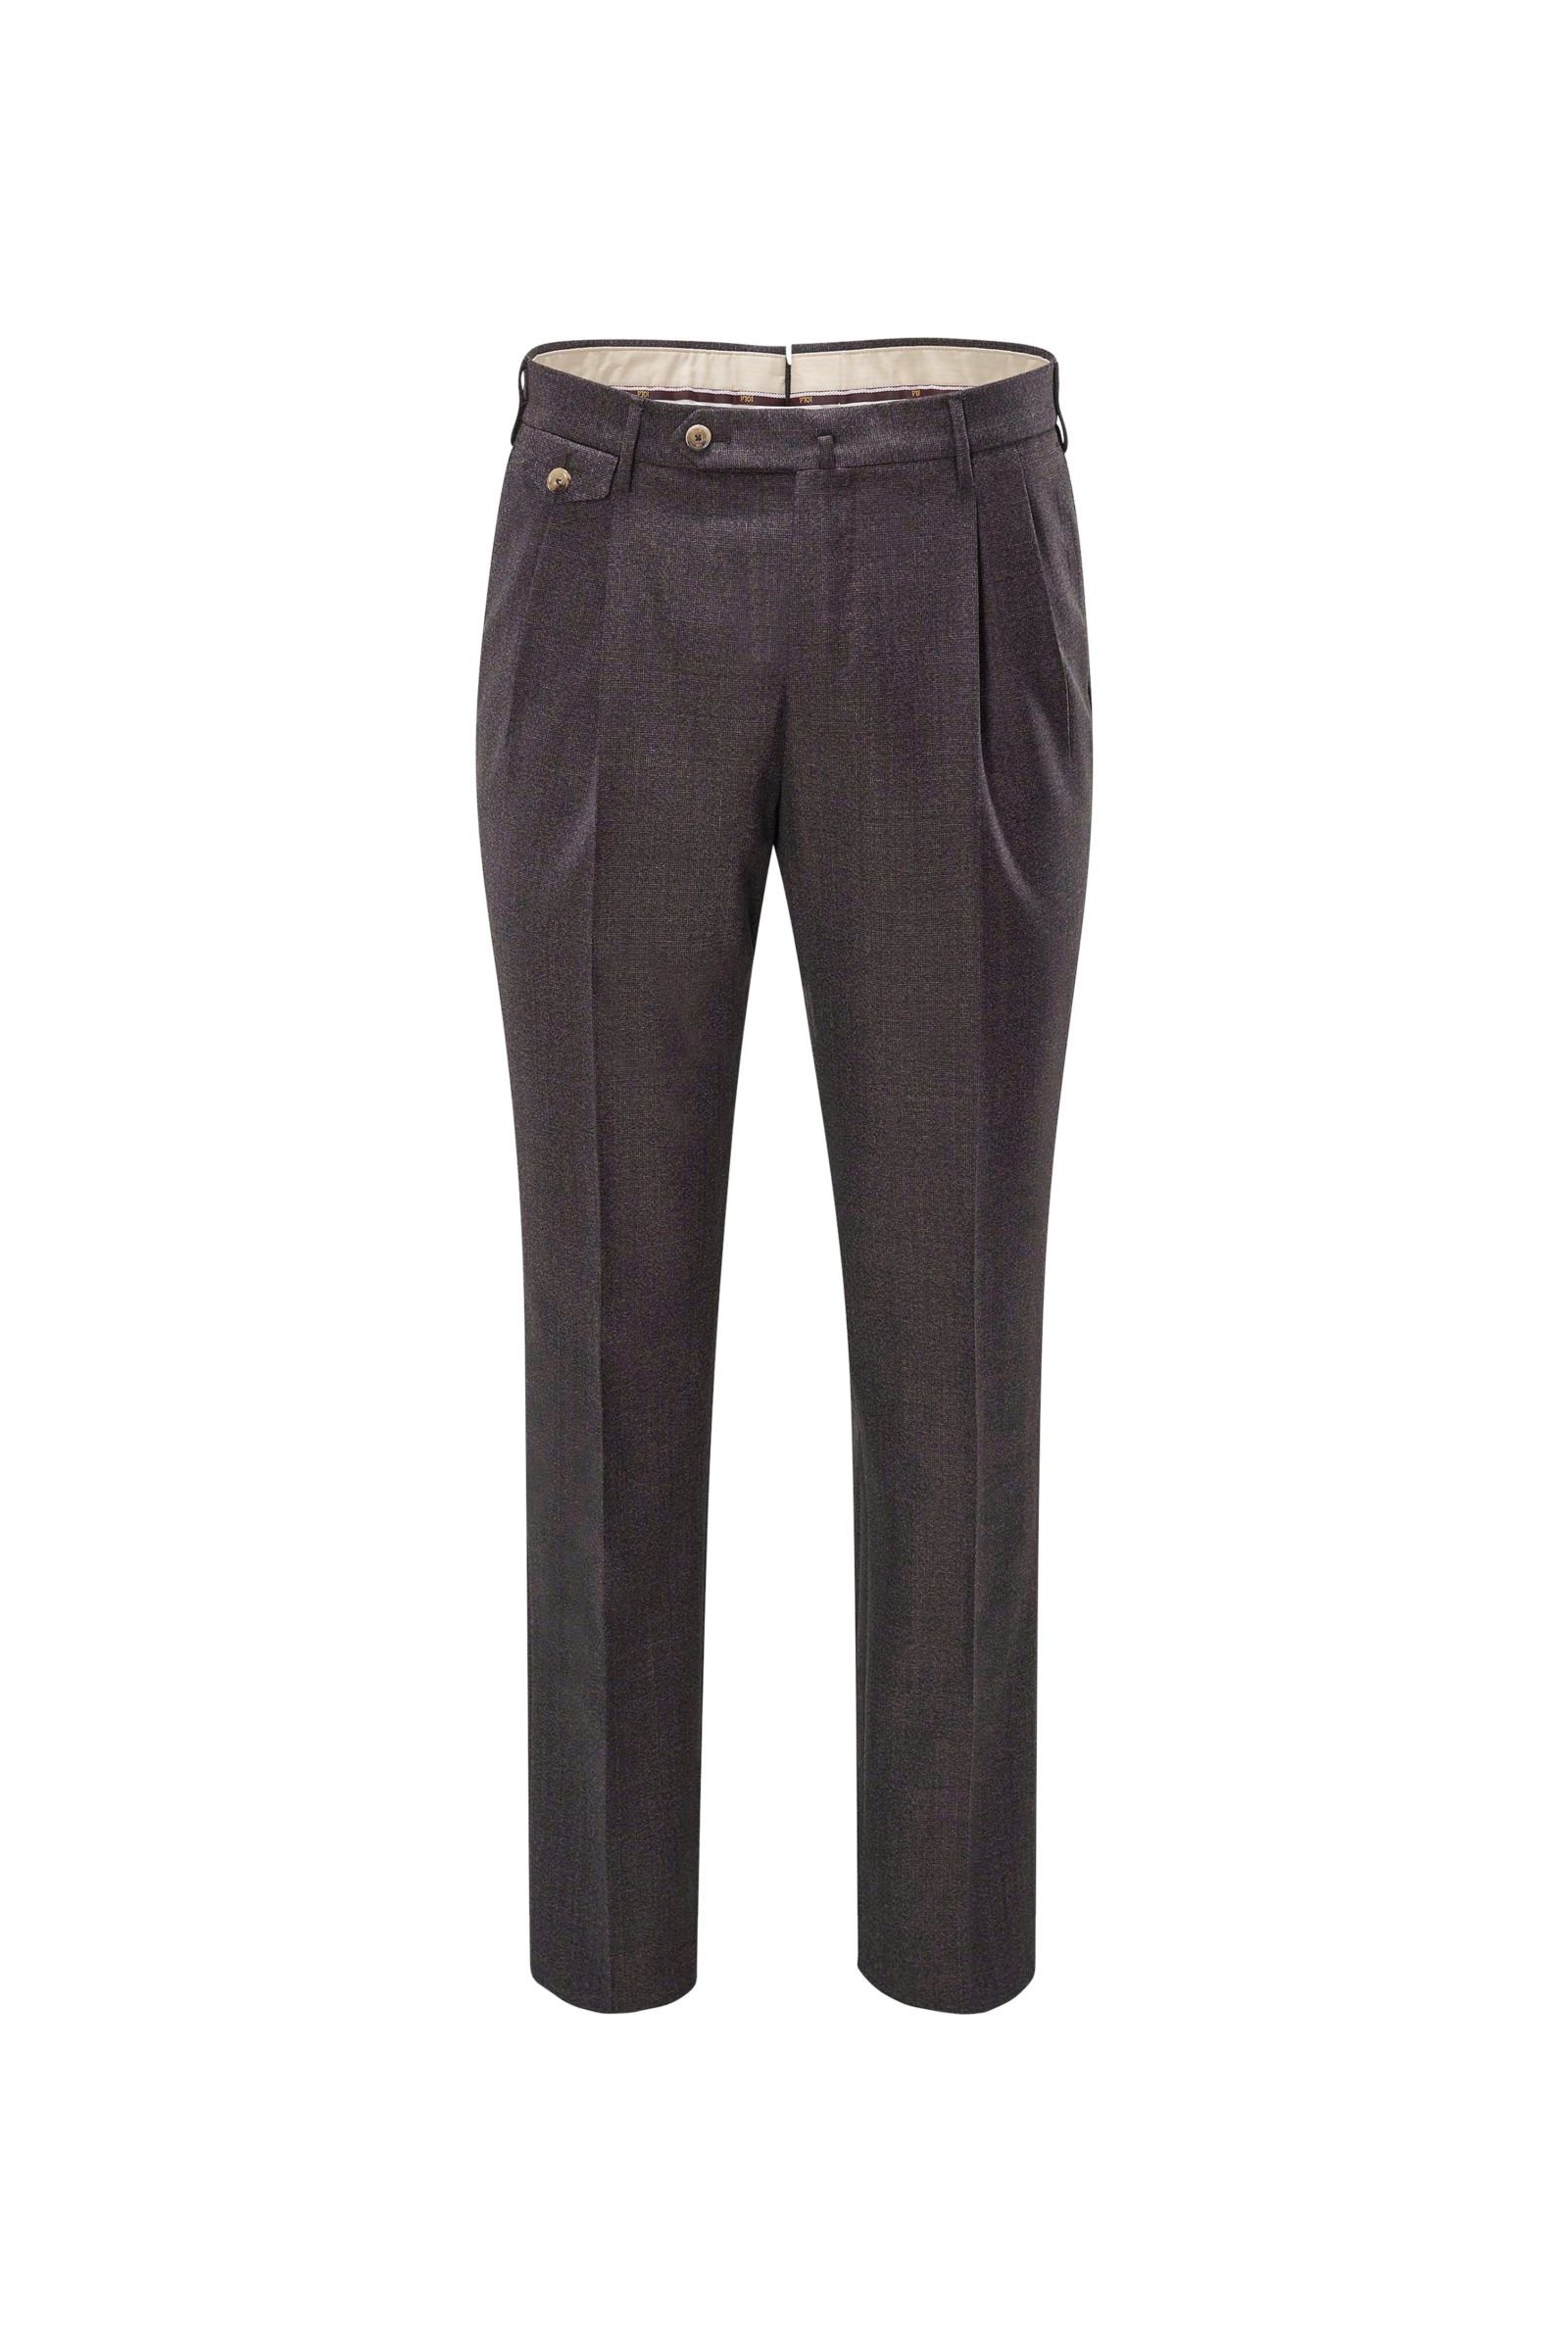 Wool trousers 'The Draper Gentleman Fit' grey-brown